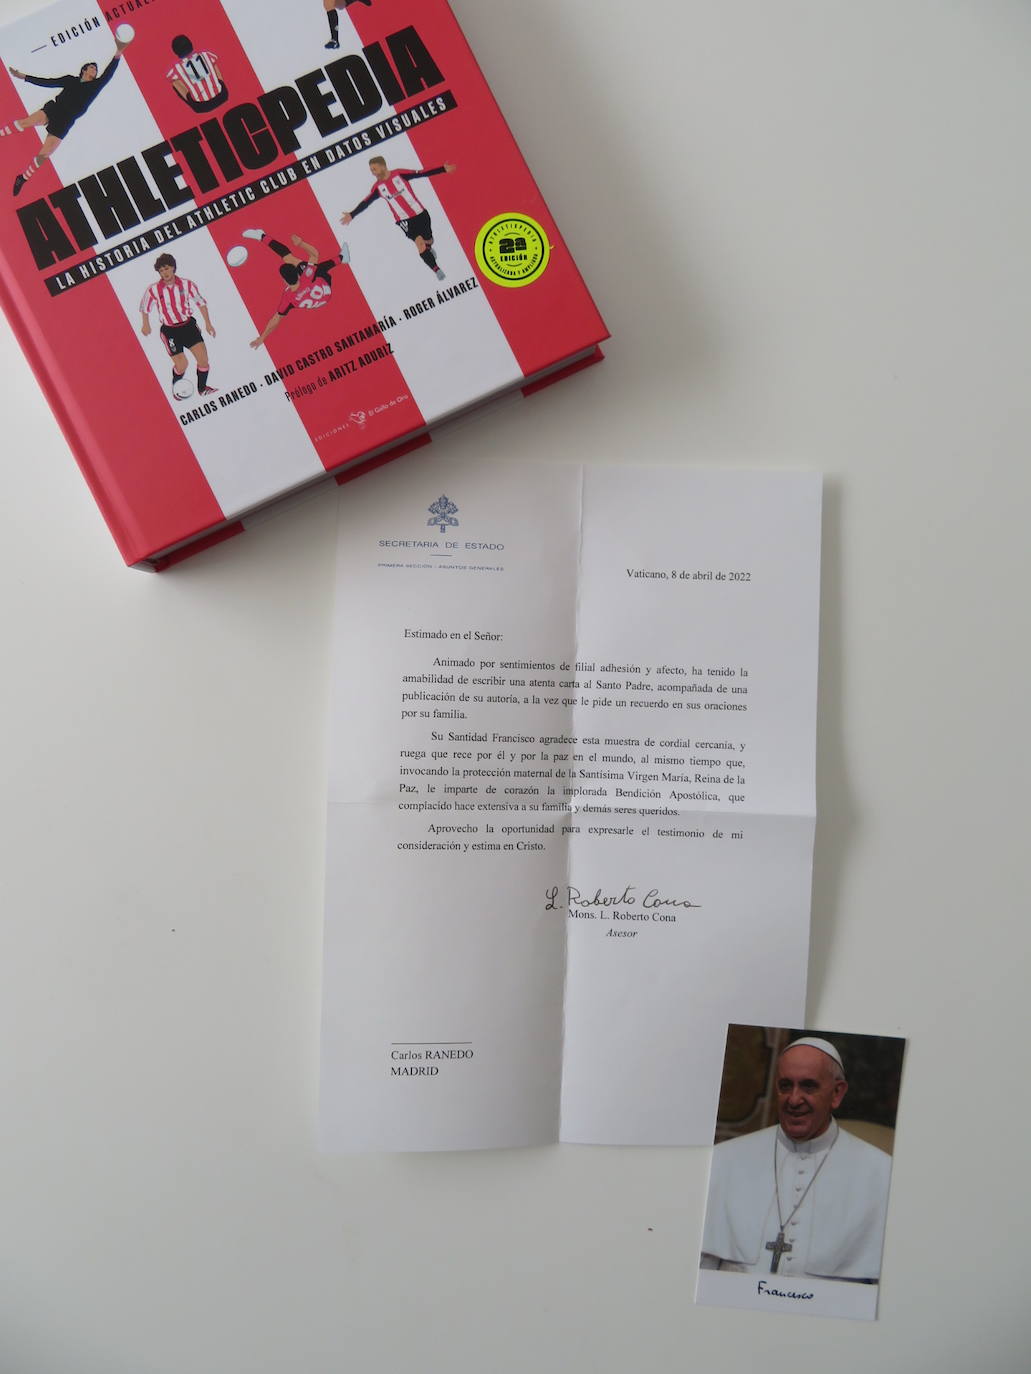 El ejemplar de la Athleticpedia junto a la carta del Papa Francisco. /C. R.